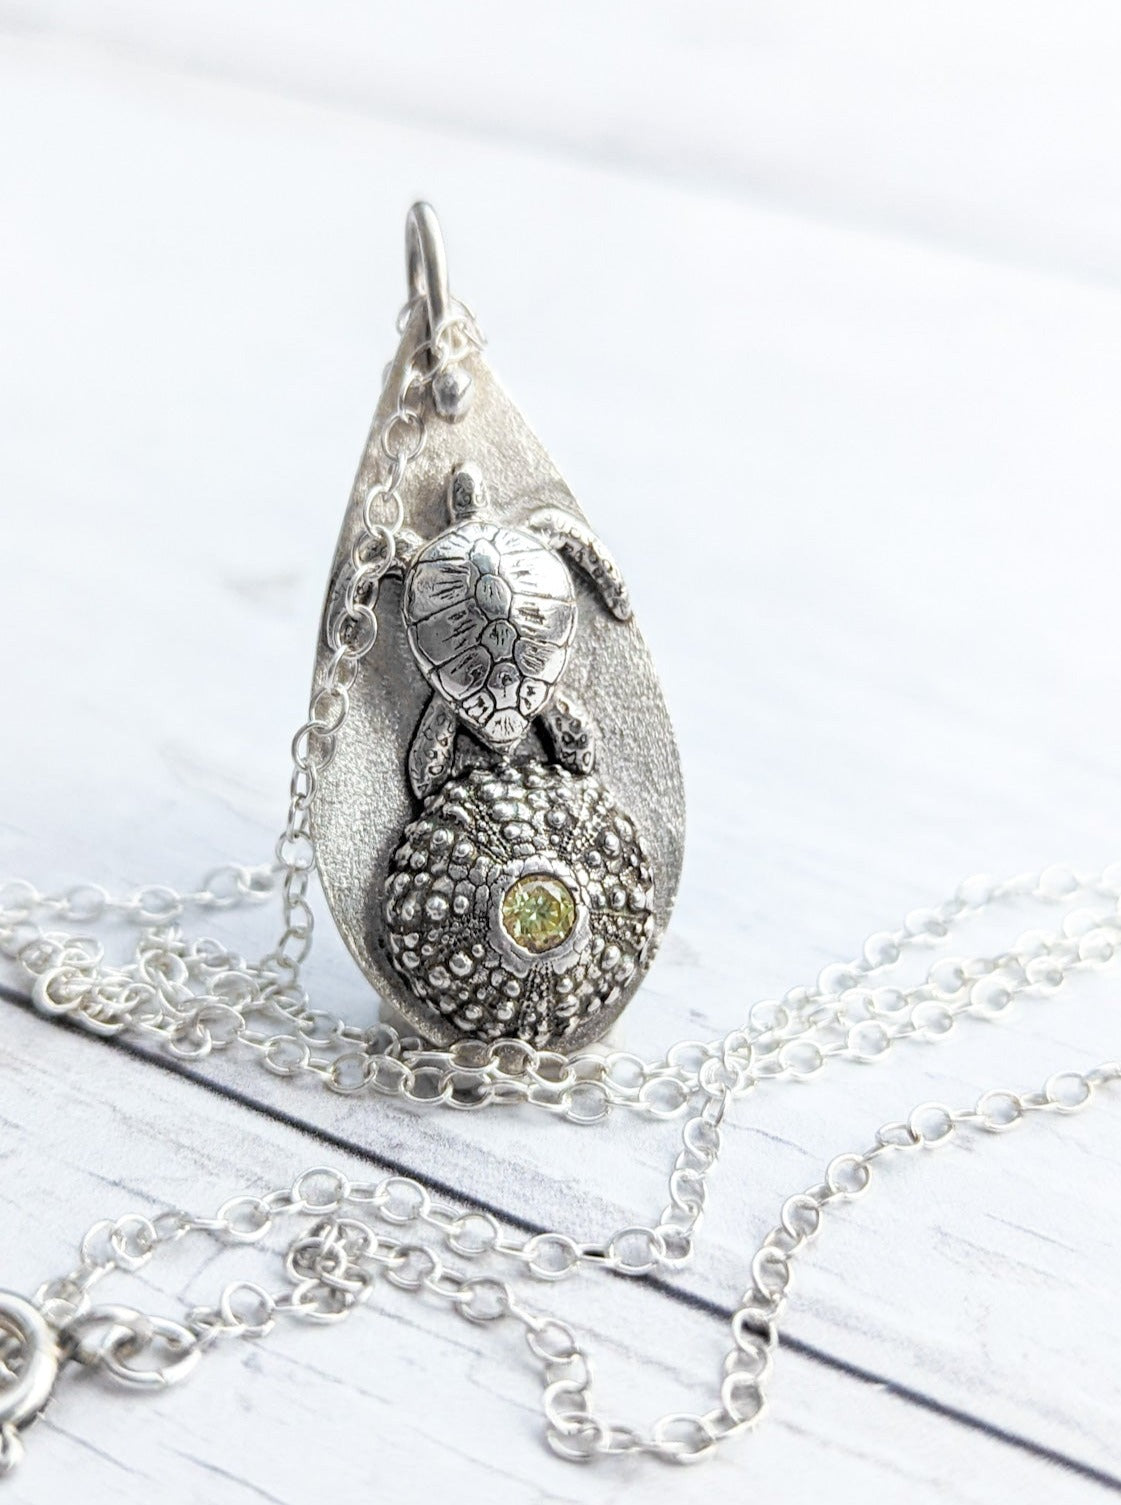 Solid silver sea turtle pendant with sea urchin